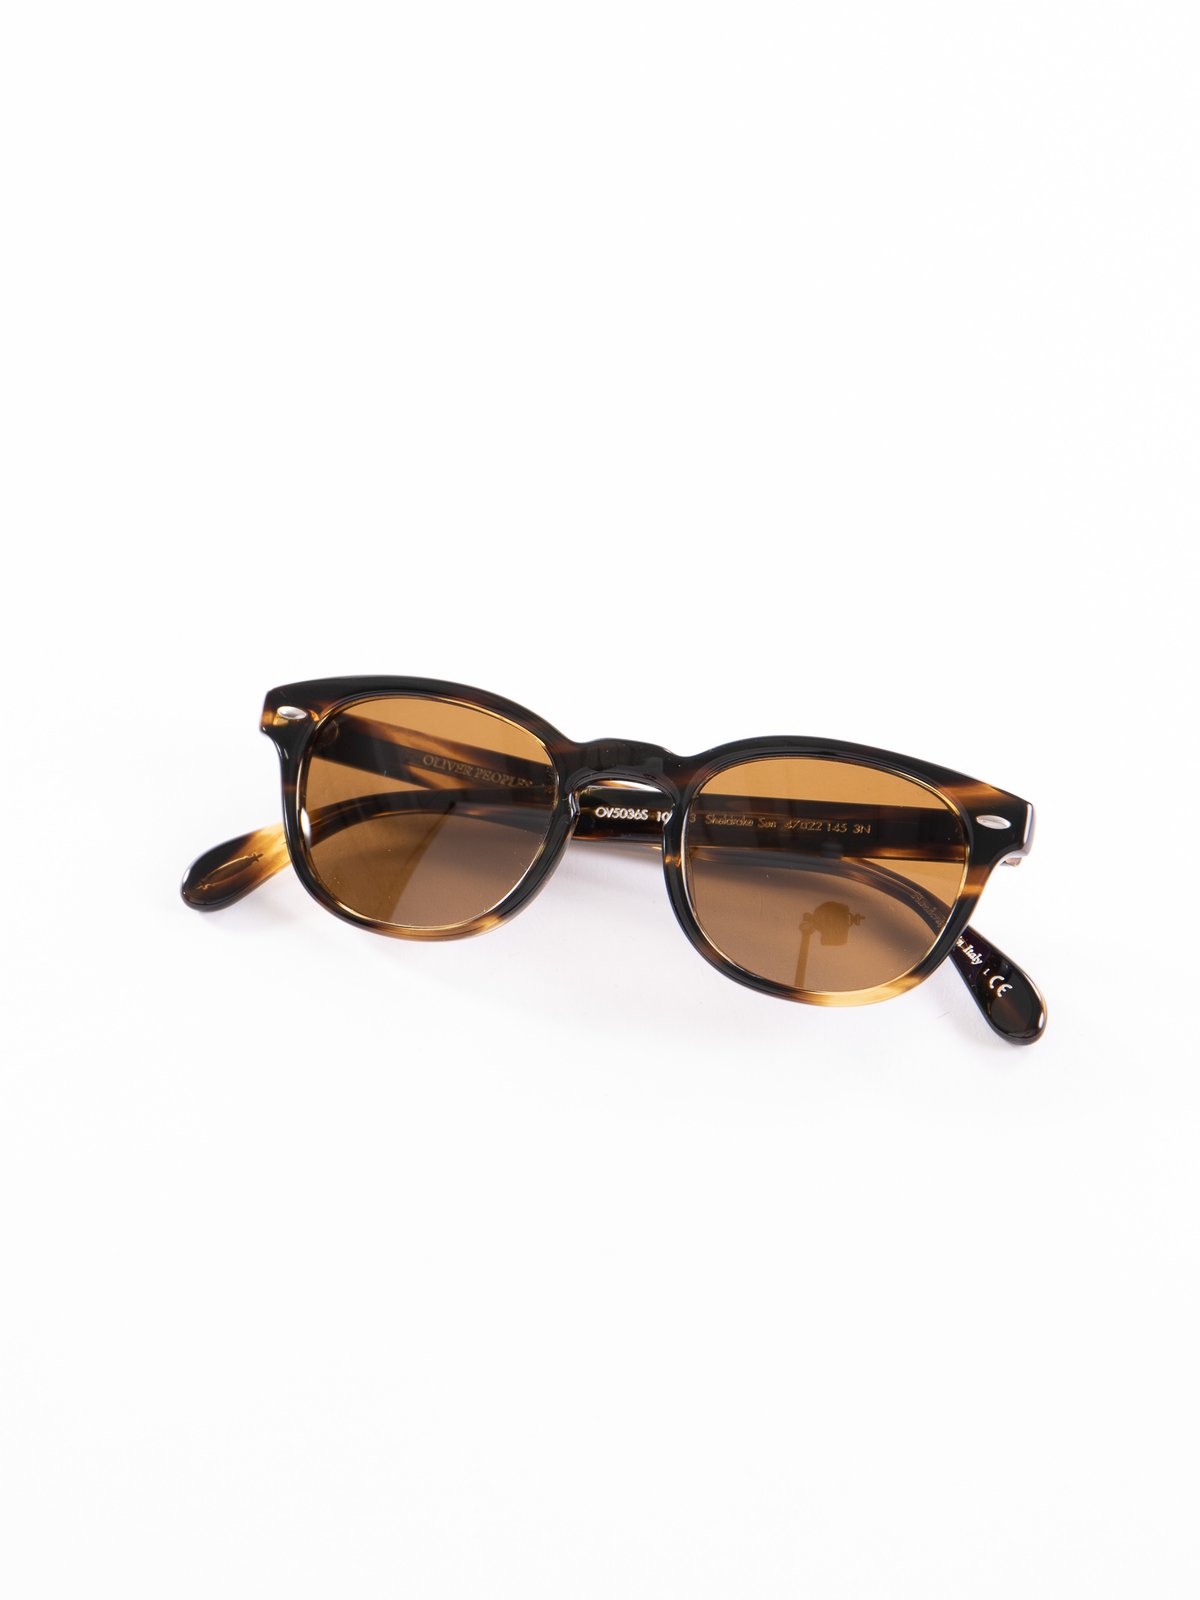 Cocobolo/Brown Sheldrake Sunglasses - Image 1